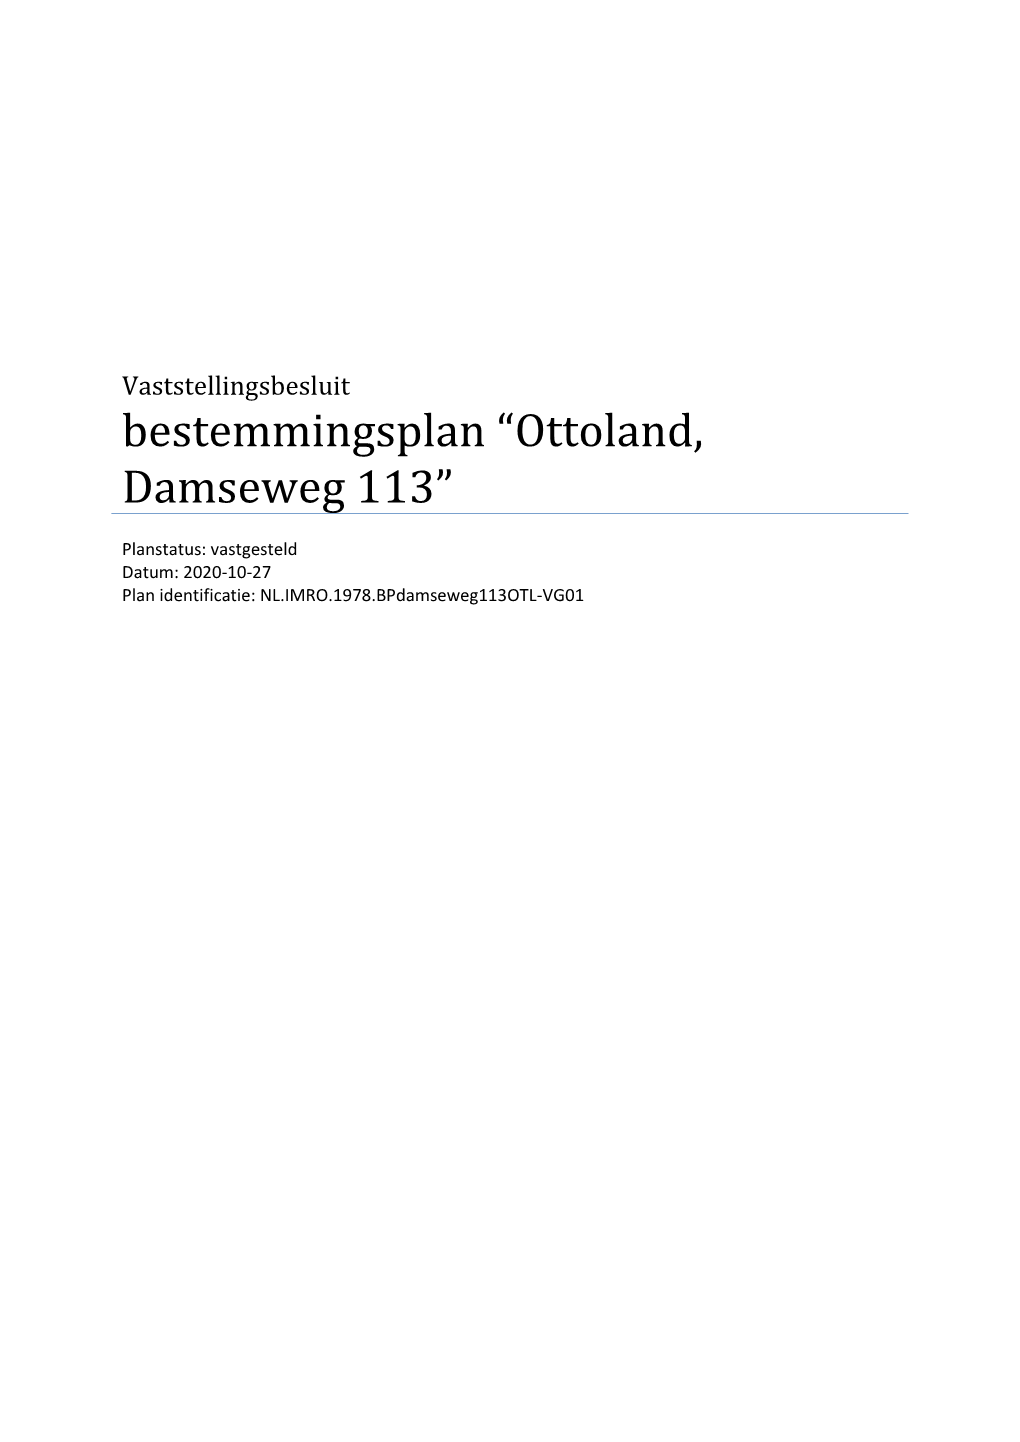 Ottoland, Damseweg 113”